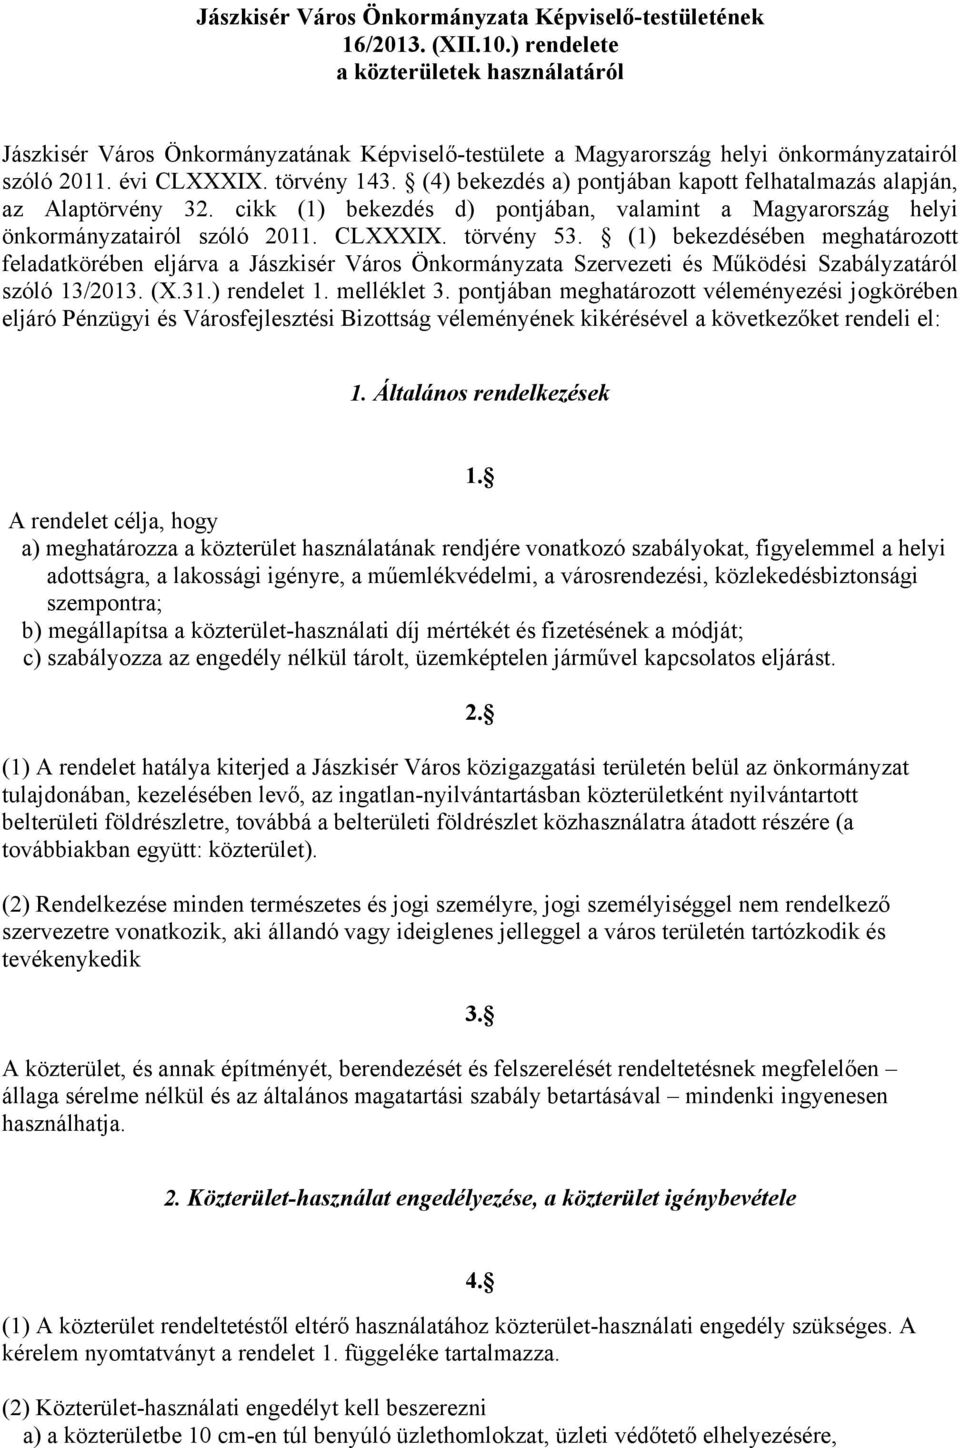 (4) bekezdés a) pontjában kapott felhatalmazás alapján, az Alaptörvény 32. cikk (1) bekezdés d) pontjában, valamint a Magyarország helyi önkormányzatairól szóló 2011. CLXXXIX. törvény 53.